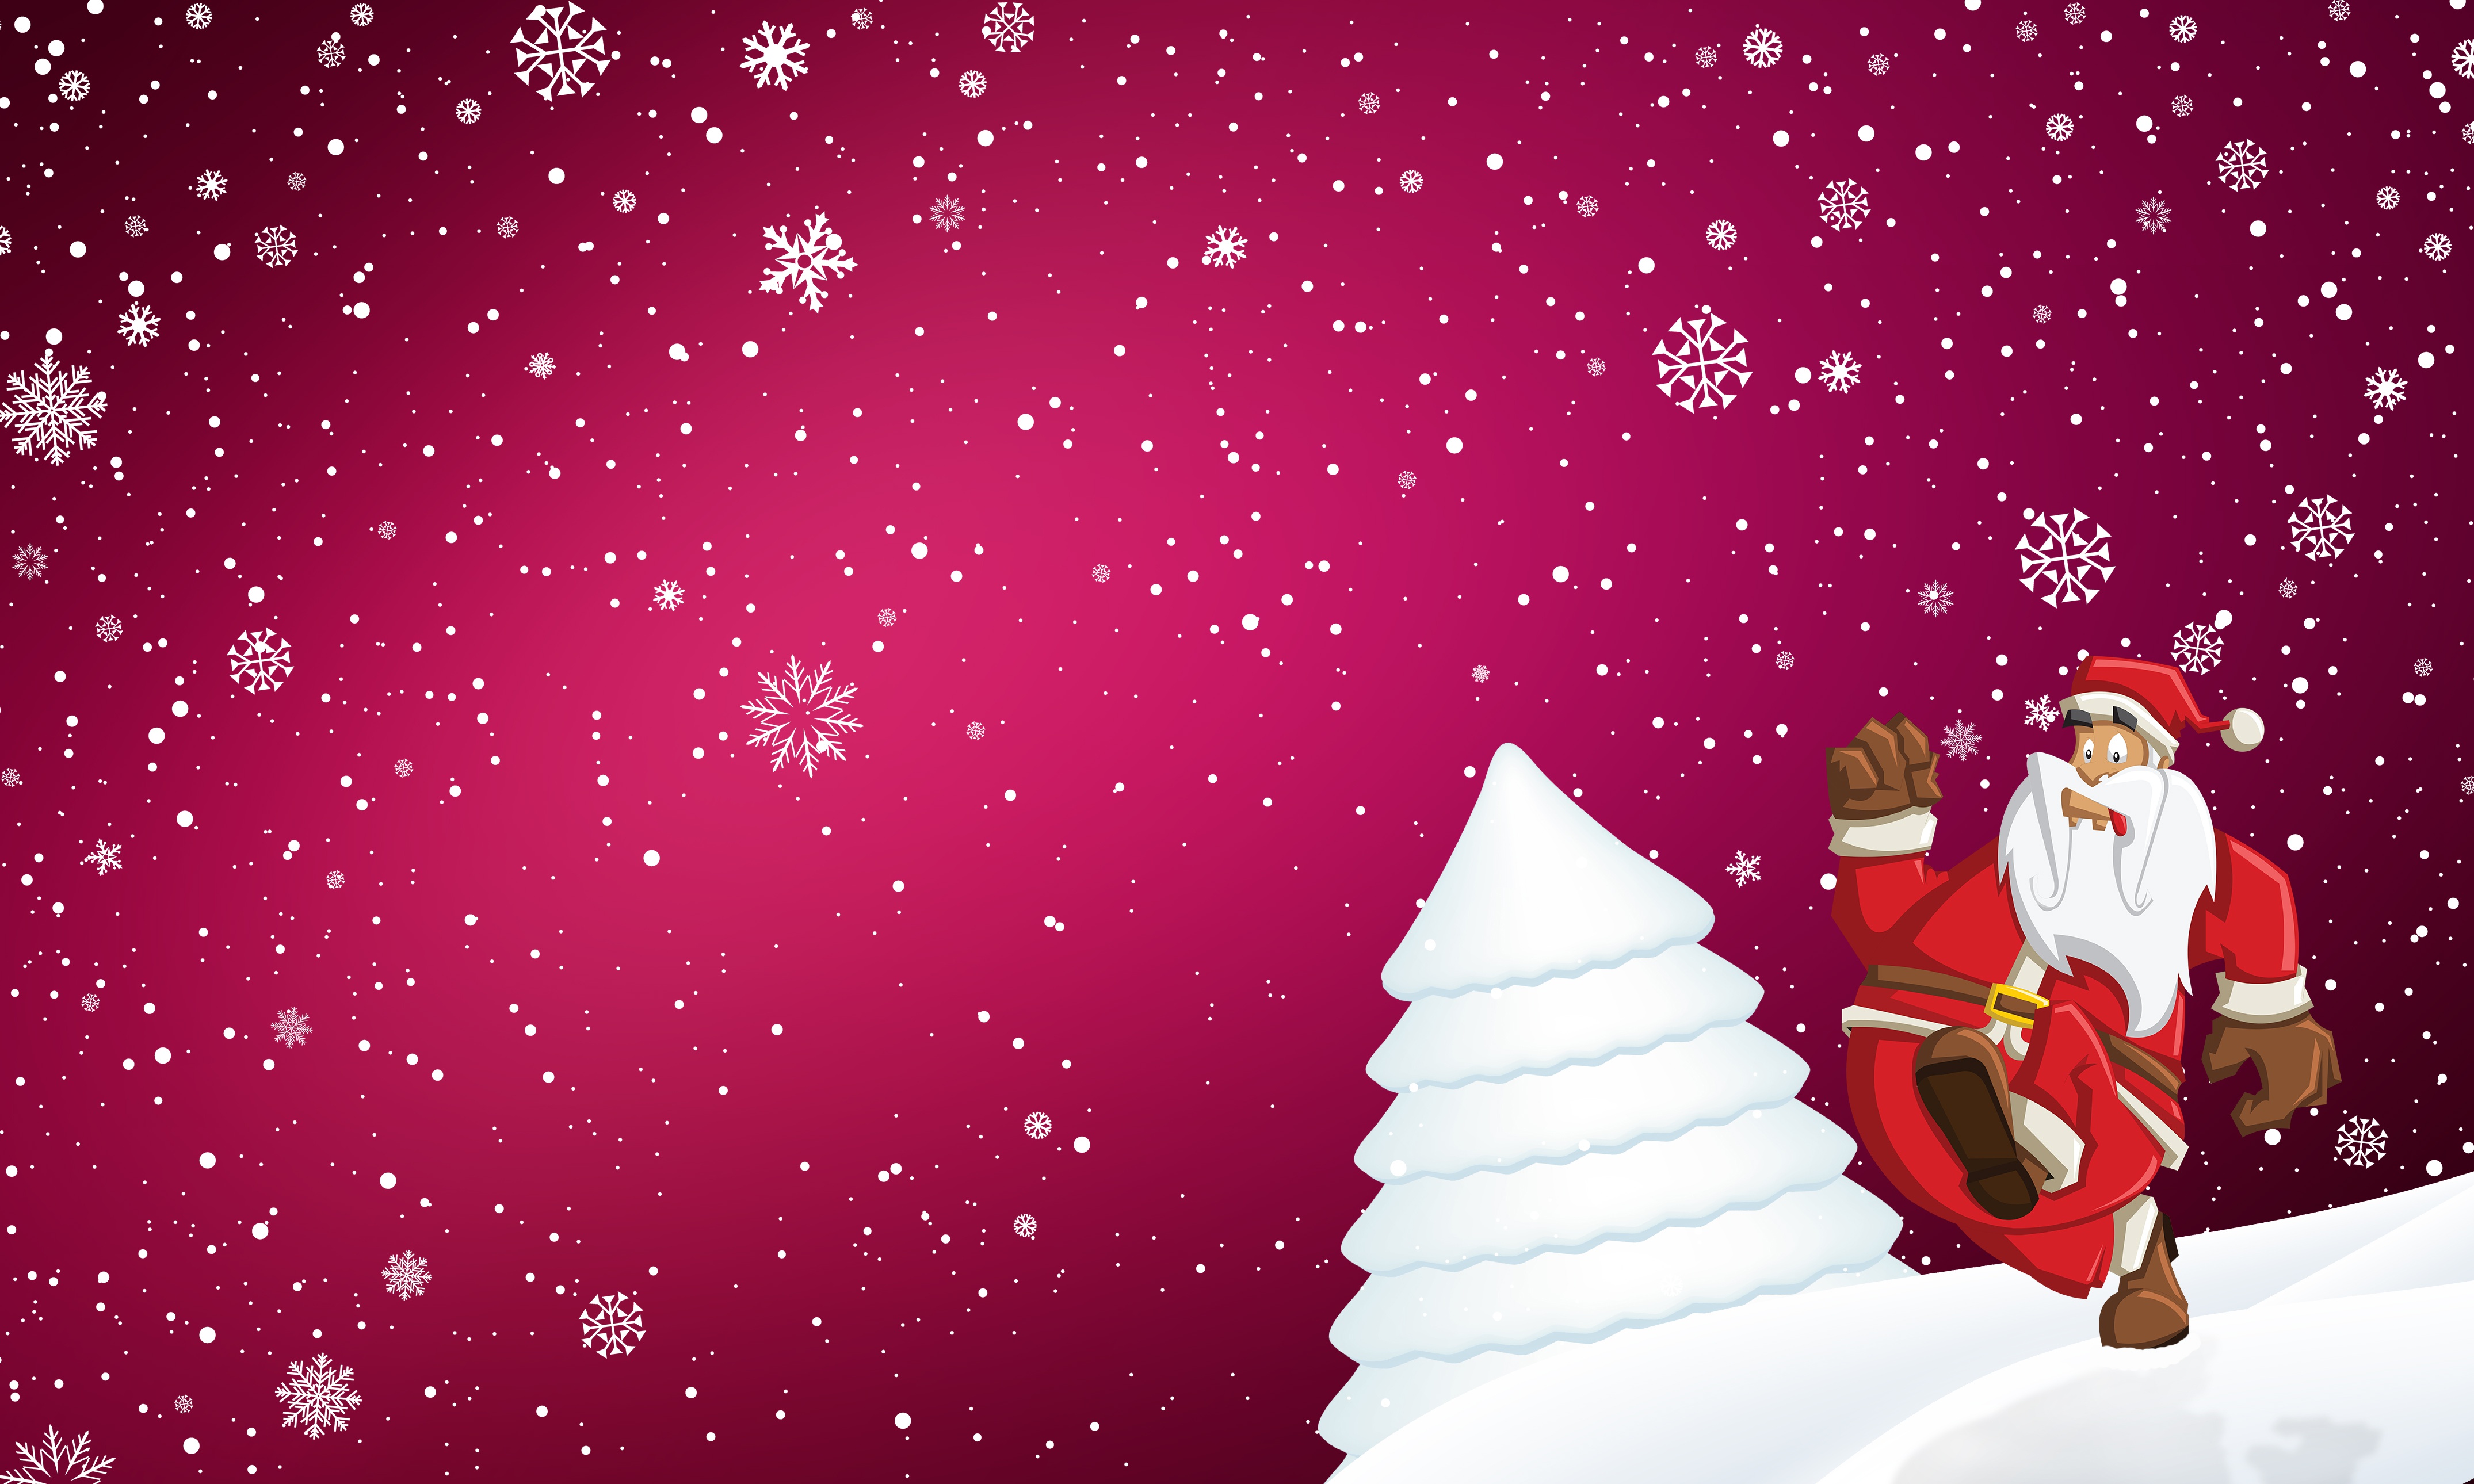 Скачать обои бесплатно Снежинки, Рождество, Борода, Праздничные, Шляпа Санты, Санта картинка на рабочий стол ПК